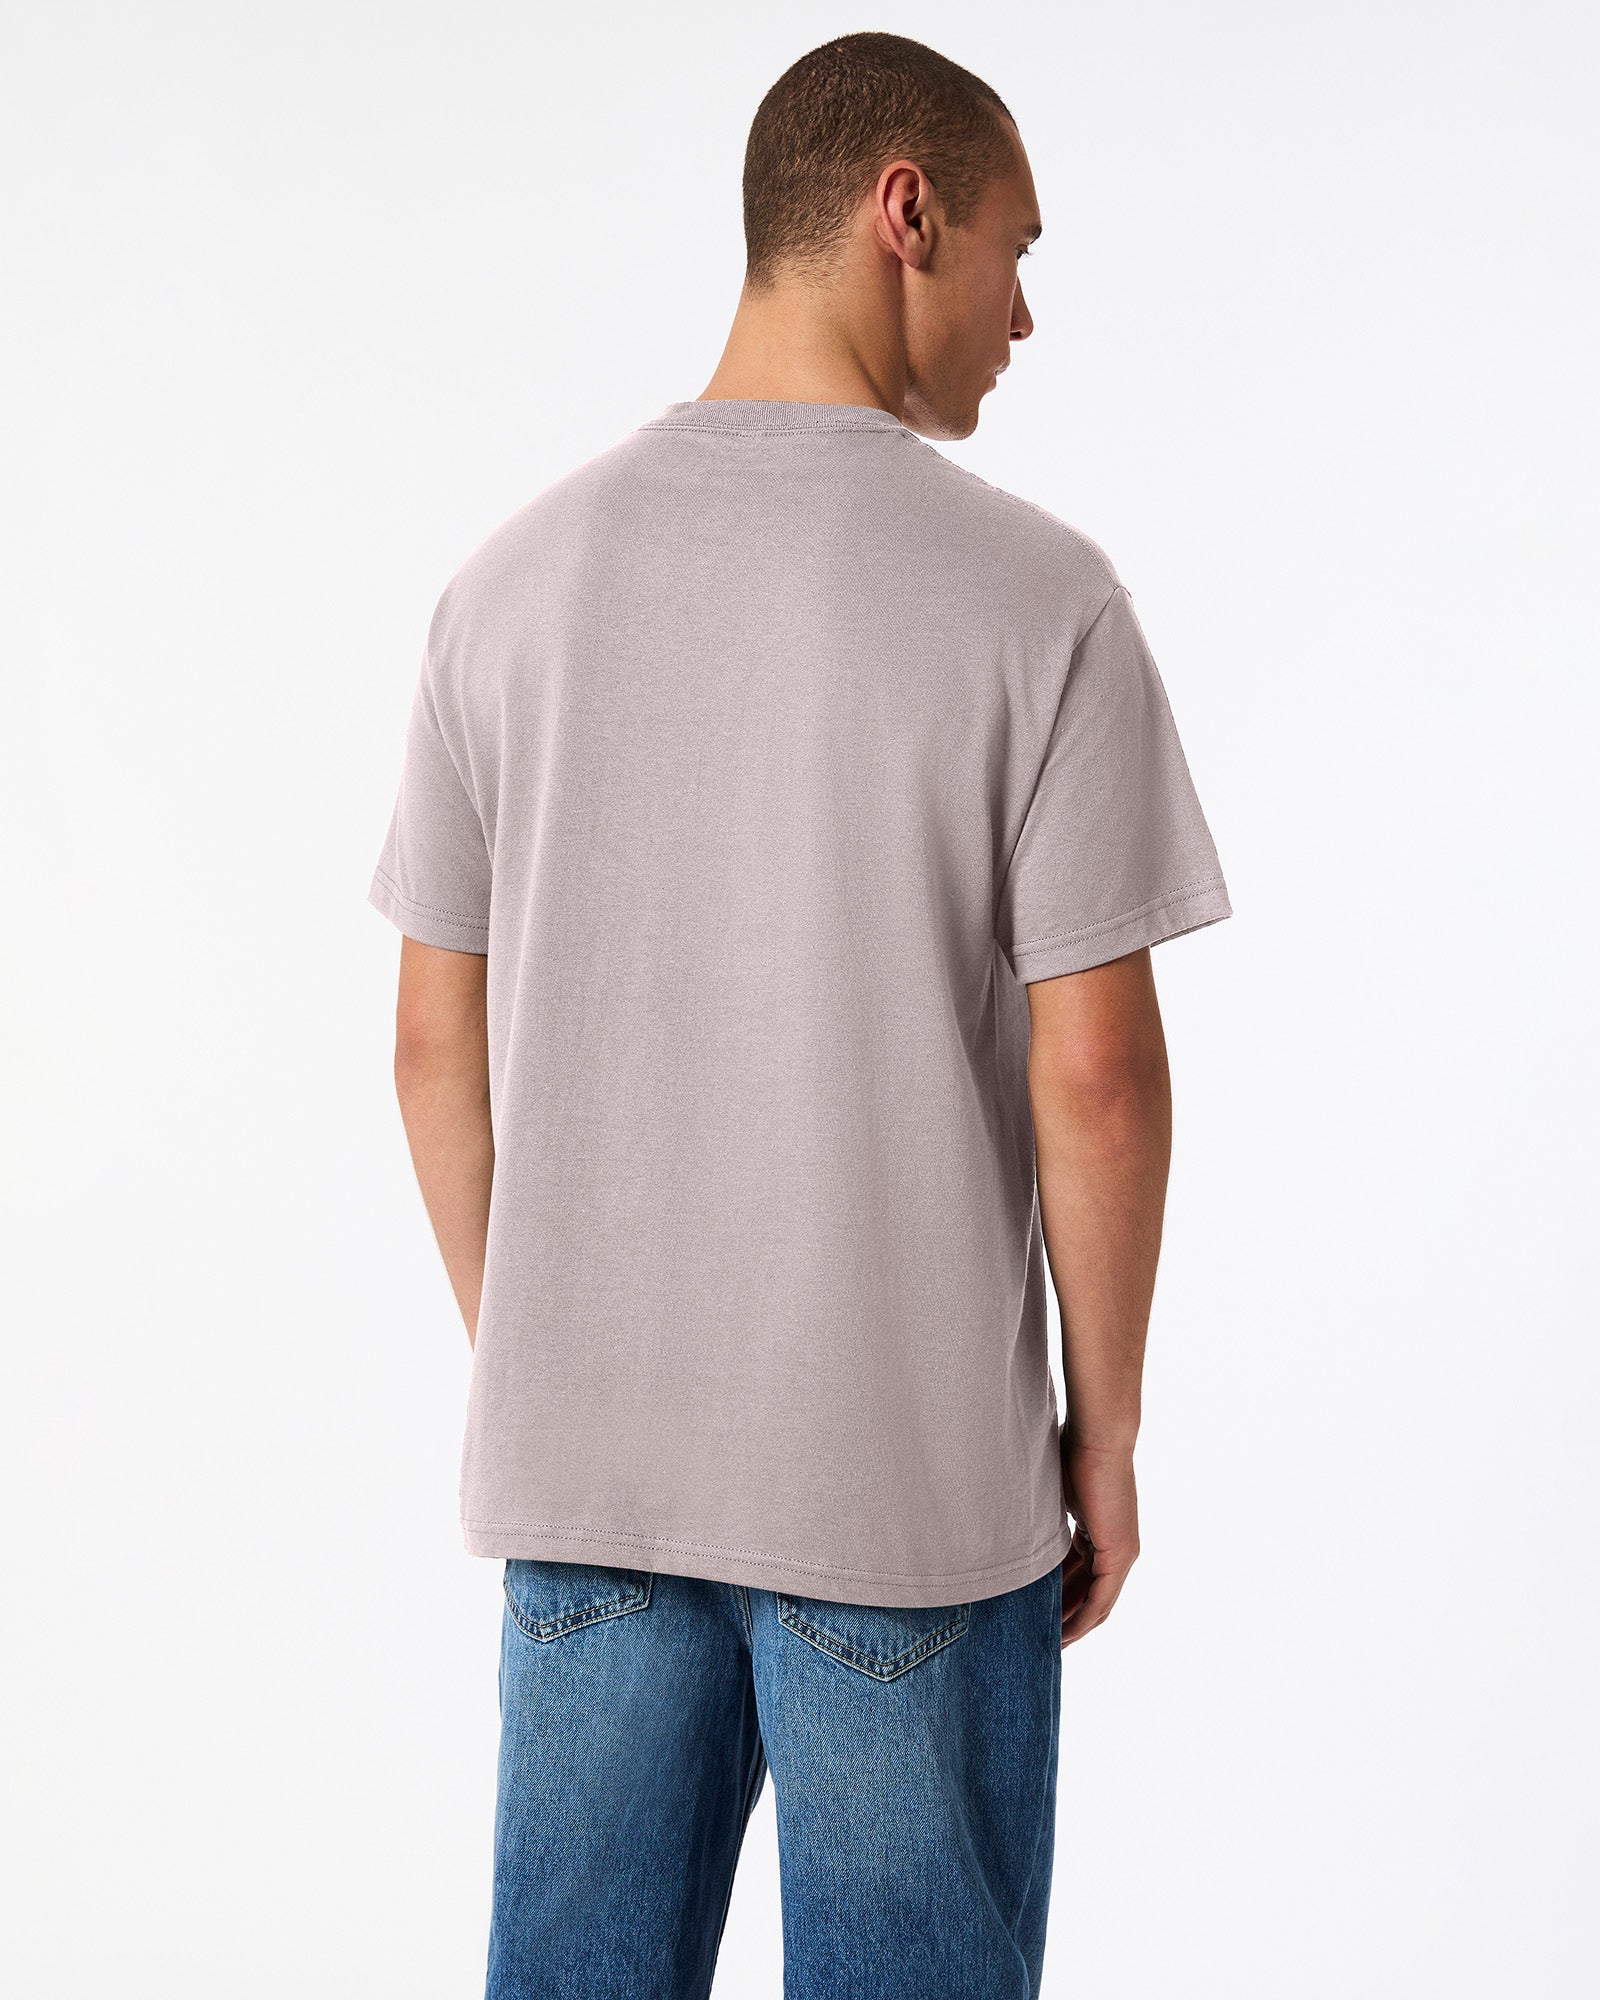 Heavyweight Unisex T-Shirt